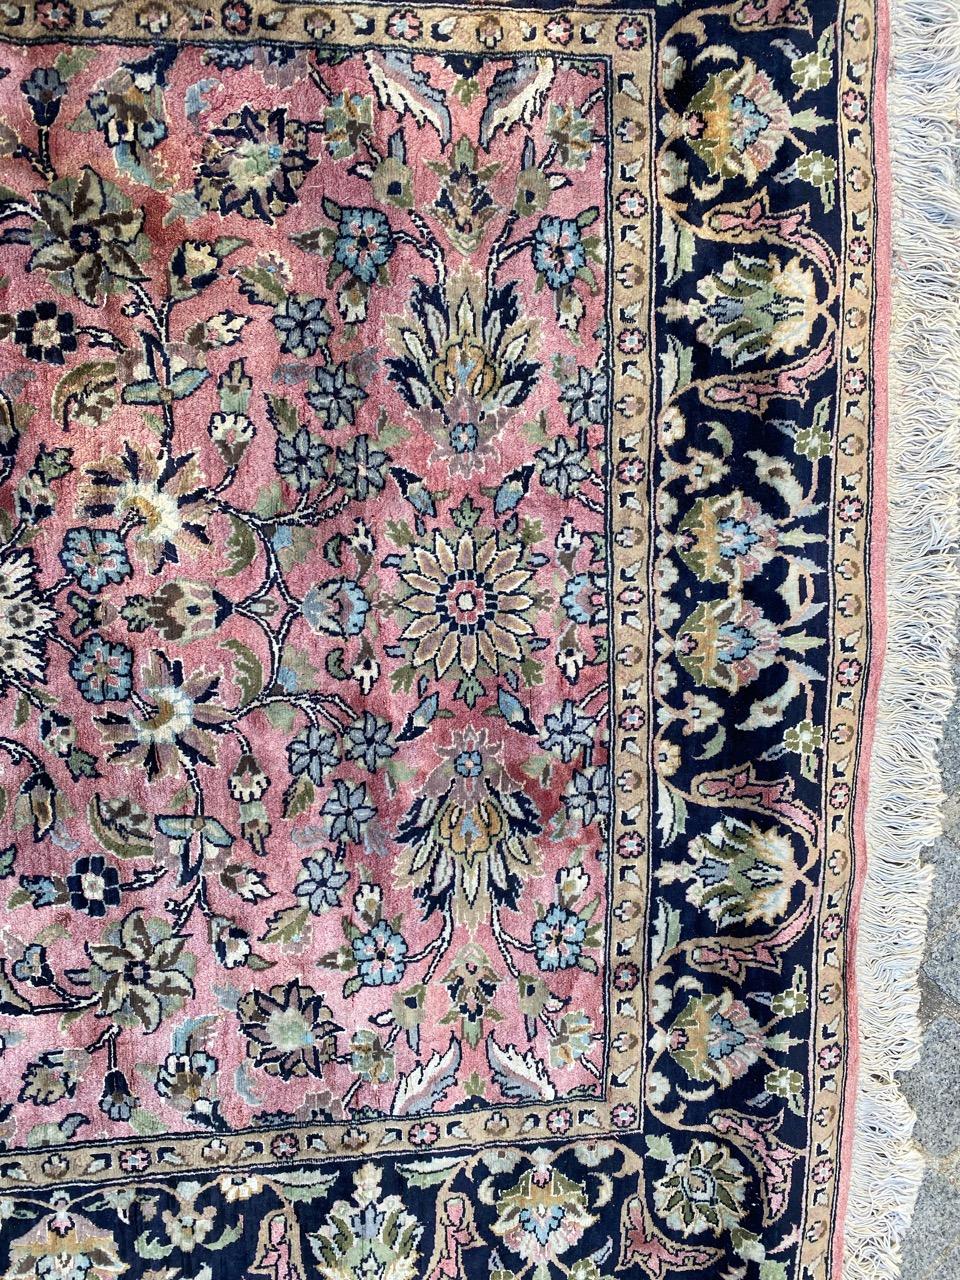 Schöner Kaschmirteppich aus der Mitte des Jahrhunderts mit schönem Blumenmuster und schönen Farben, komplett handgeknüpft mit Wolle und Seidensamt auf Baumwollbasis.

✨✨✨
